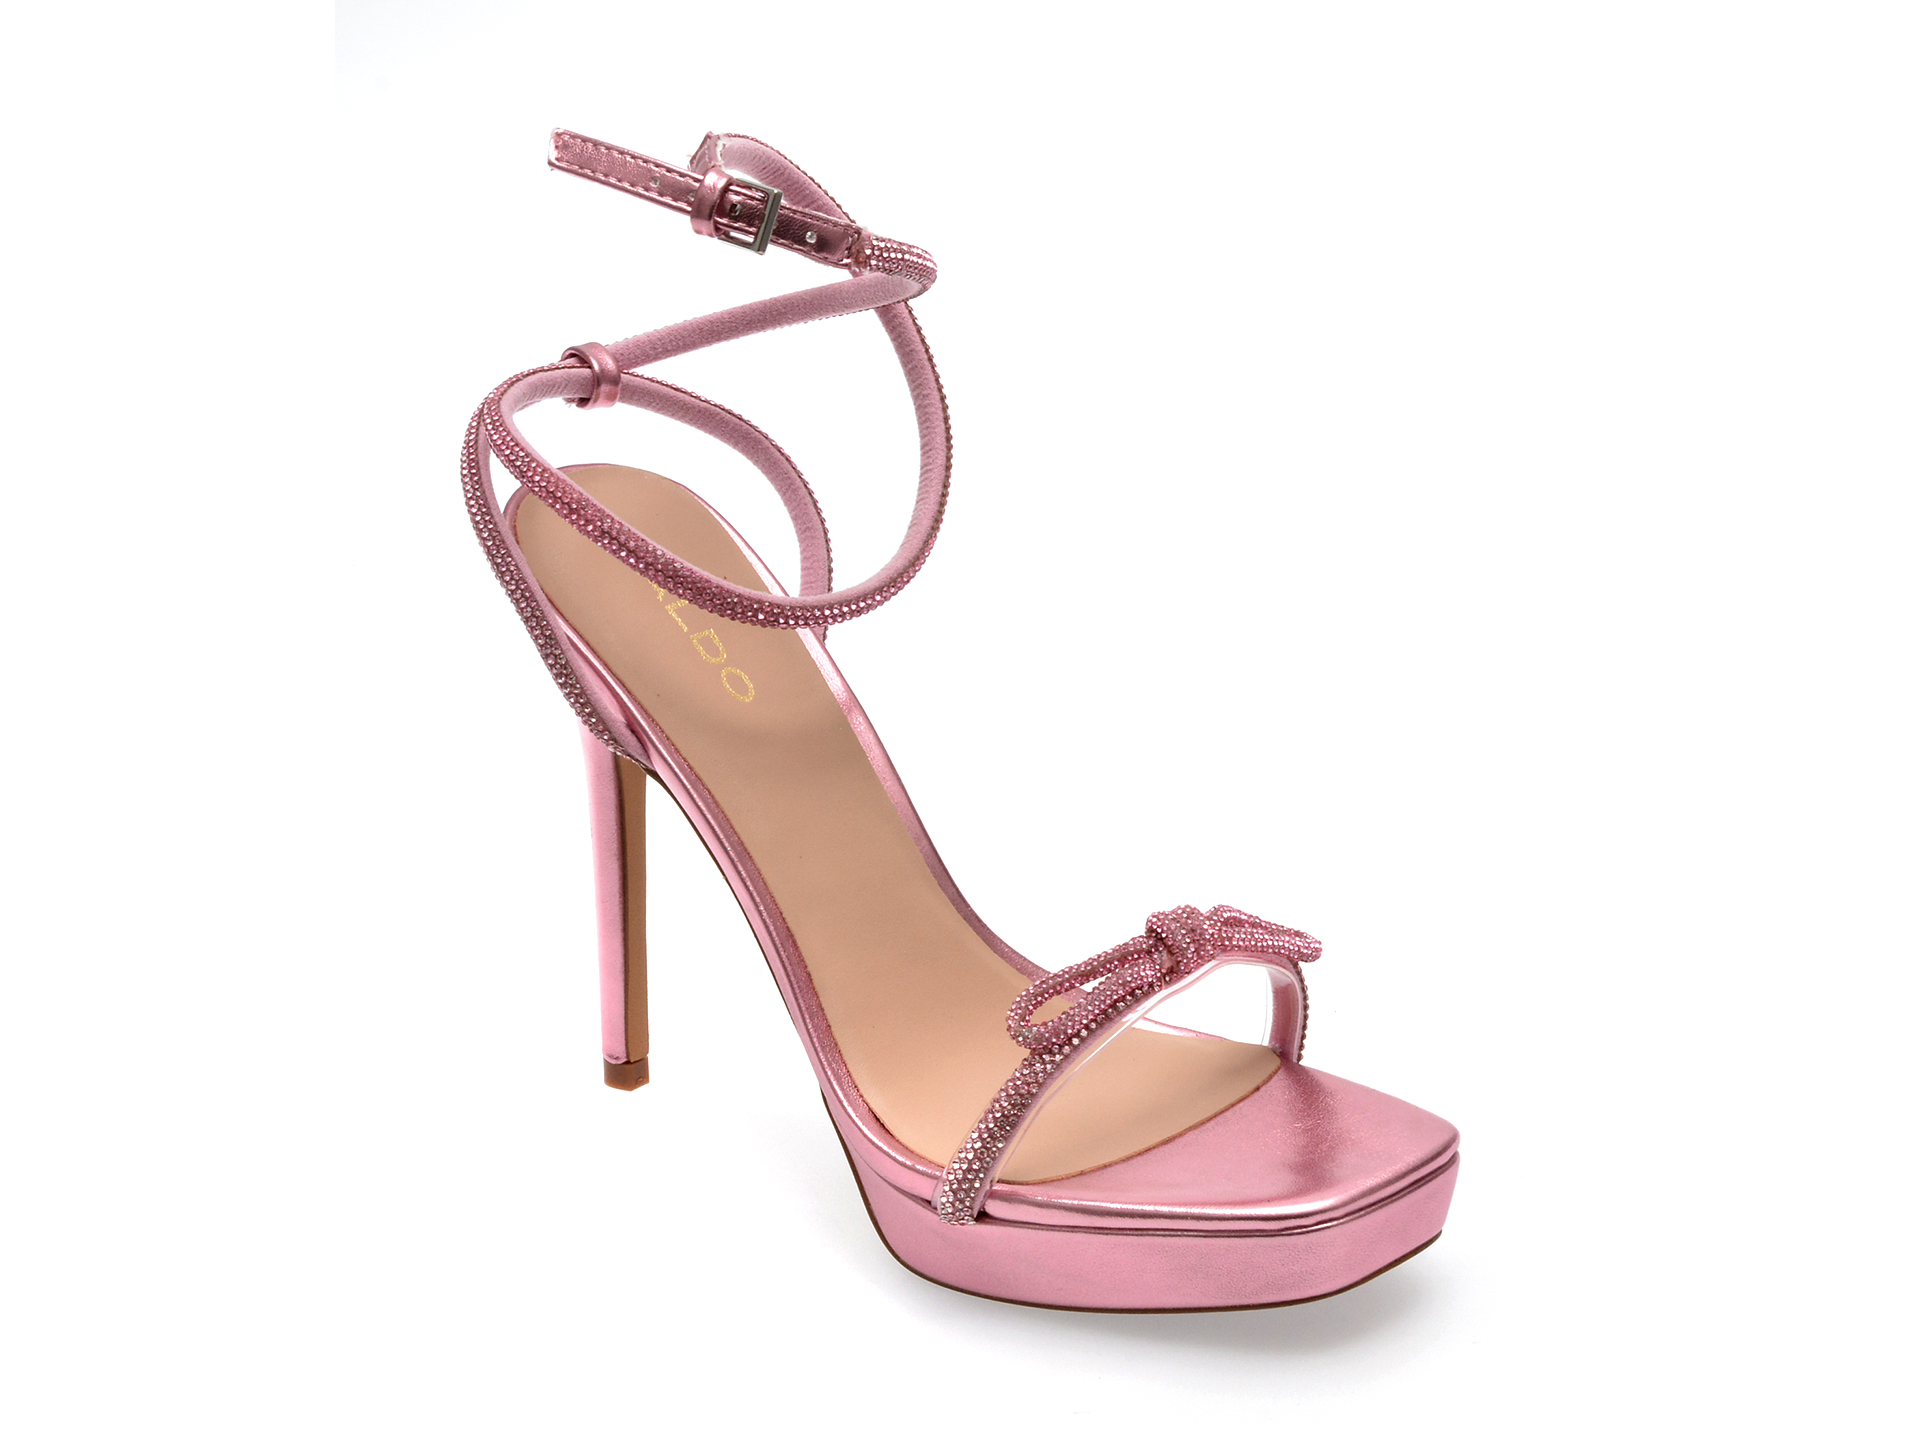 Sandale ALDO roz, DOMENICA650, din material textil